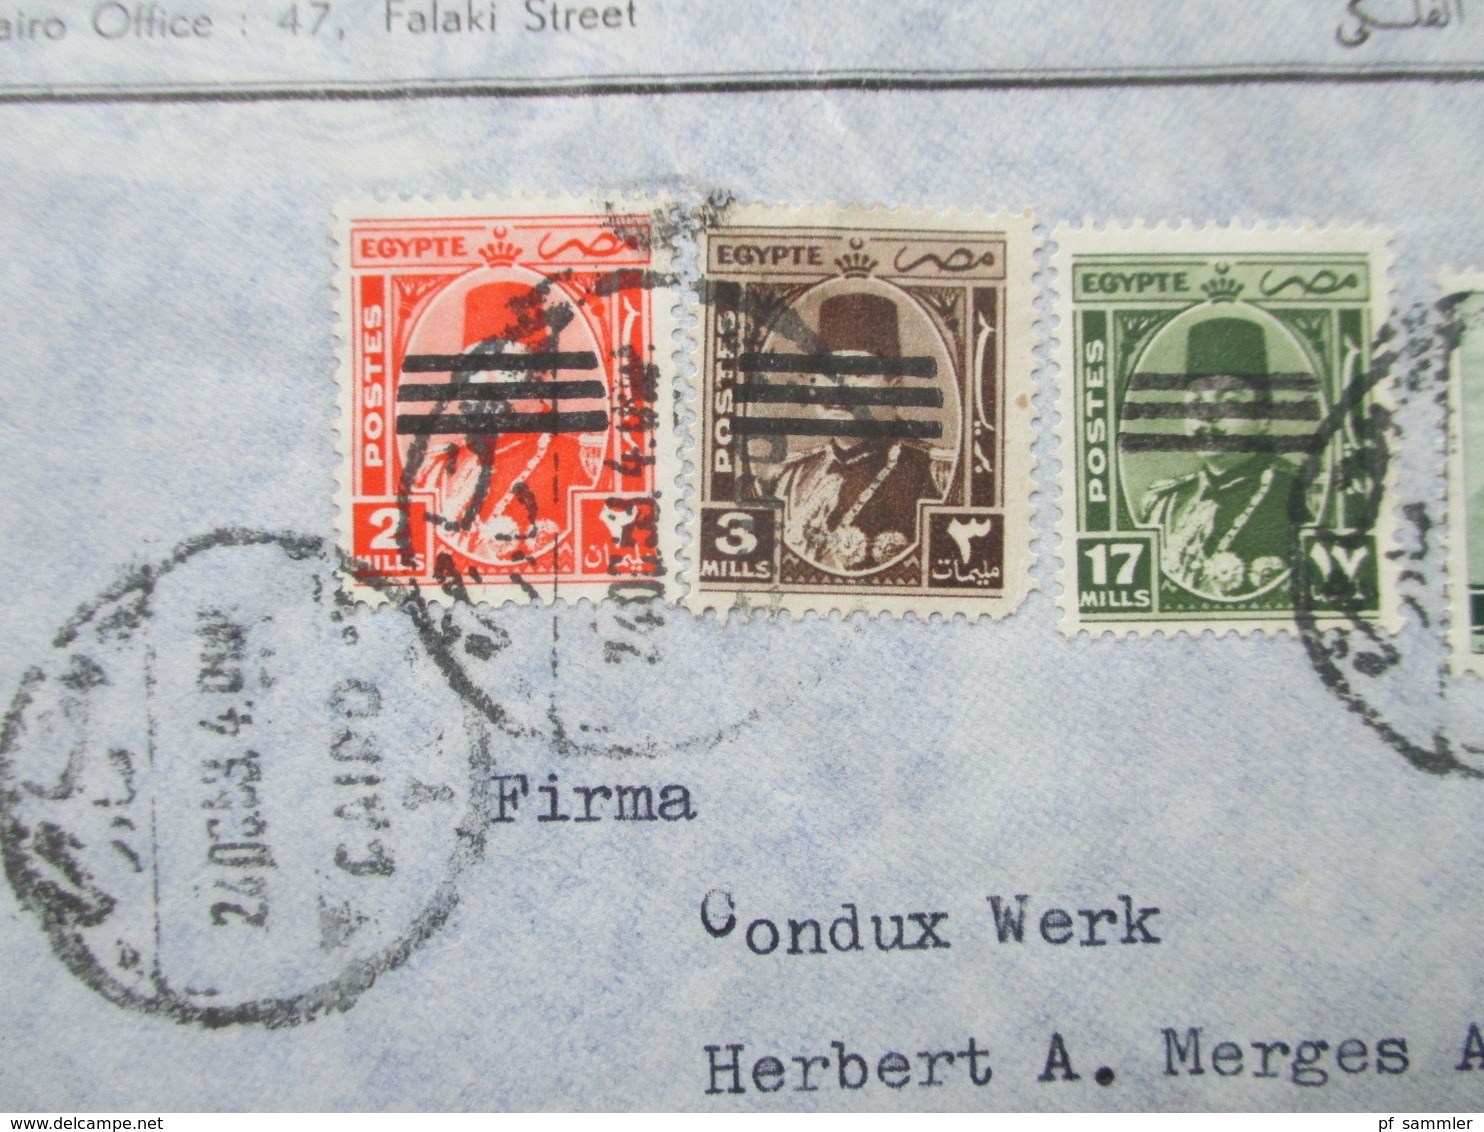 Ägypten 1963 ?! Luftpost / Air Mail Absender Nour El Din & Först Cairo. Condux Werk Wolfgang Bei Hanau - Lettres & Documents